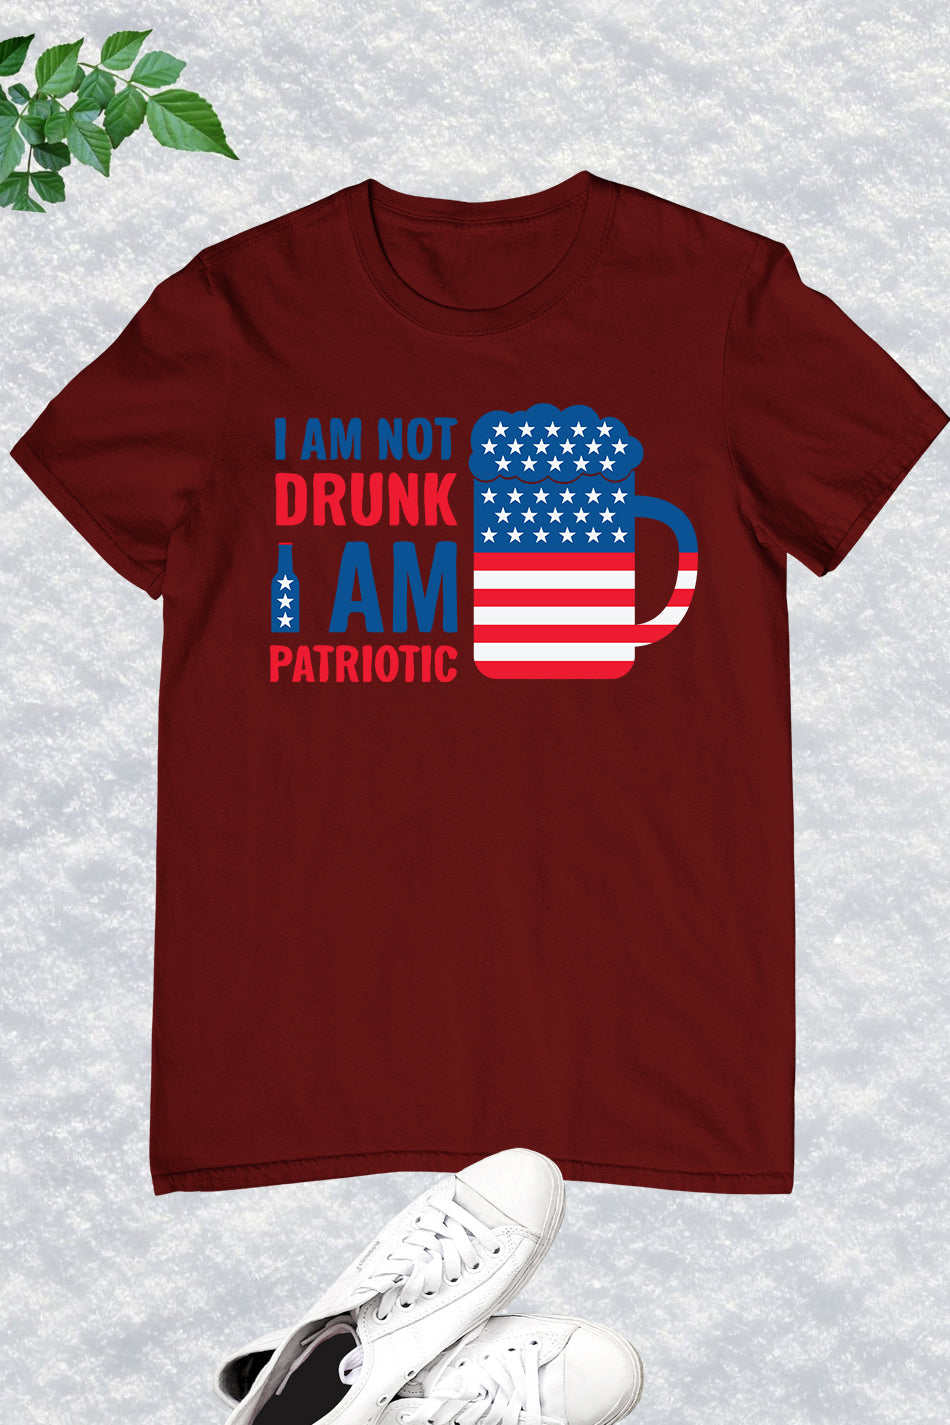 I Am Not Drunk I Am Funny Patriotic Shirt